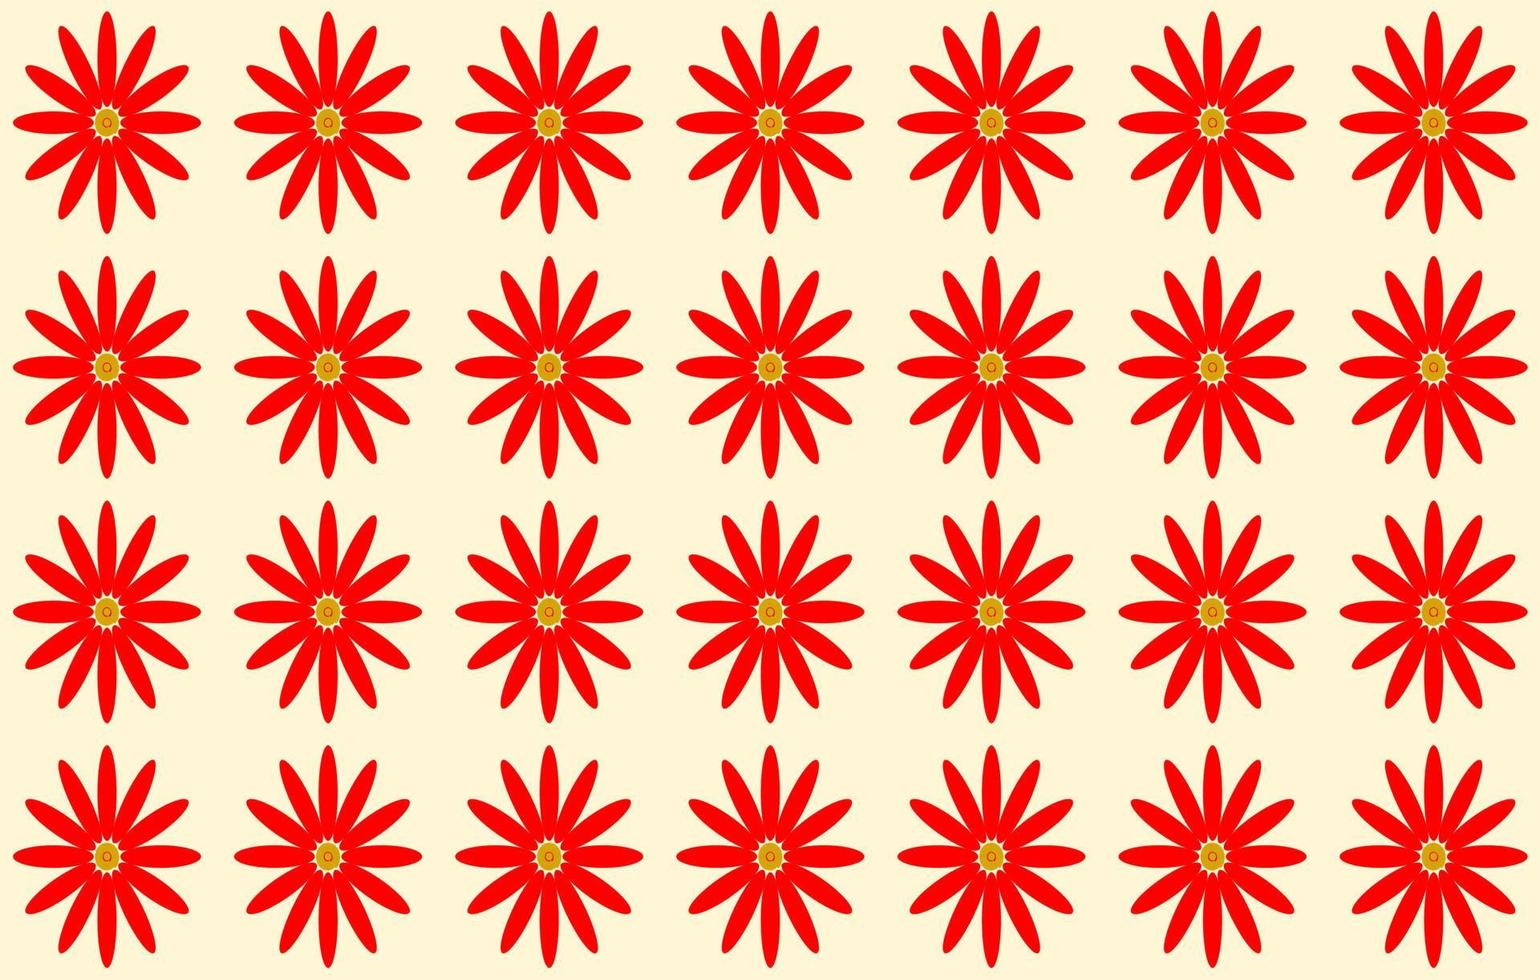 rode bloemen op lichtgele achtergrond. vectorontwerp. naadloos patroon. voor papier, doek, stof, doek, tafelkleed, servet, hoes, bed, gordijn, bedrukking, cadeau, cadeau of verpakking. vector